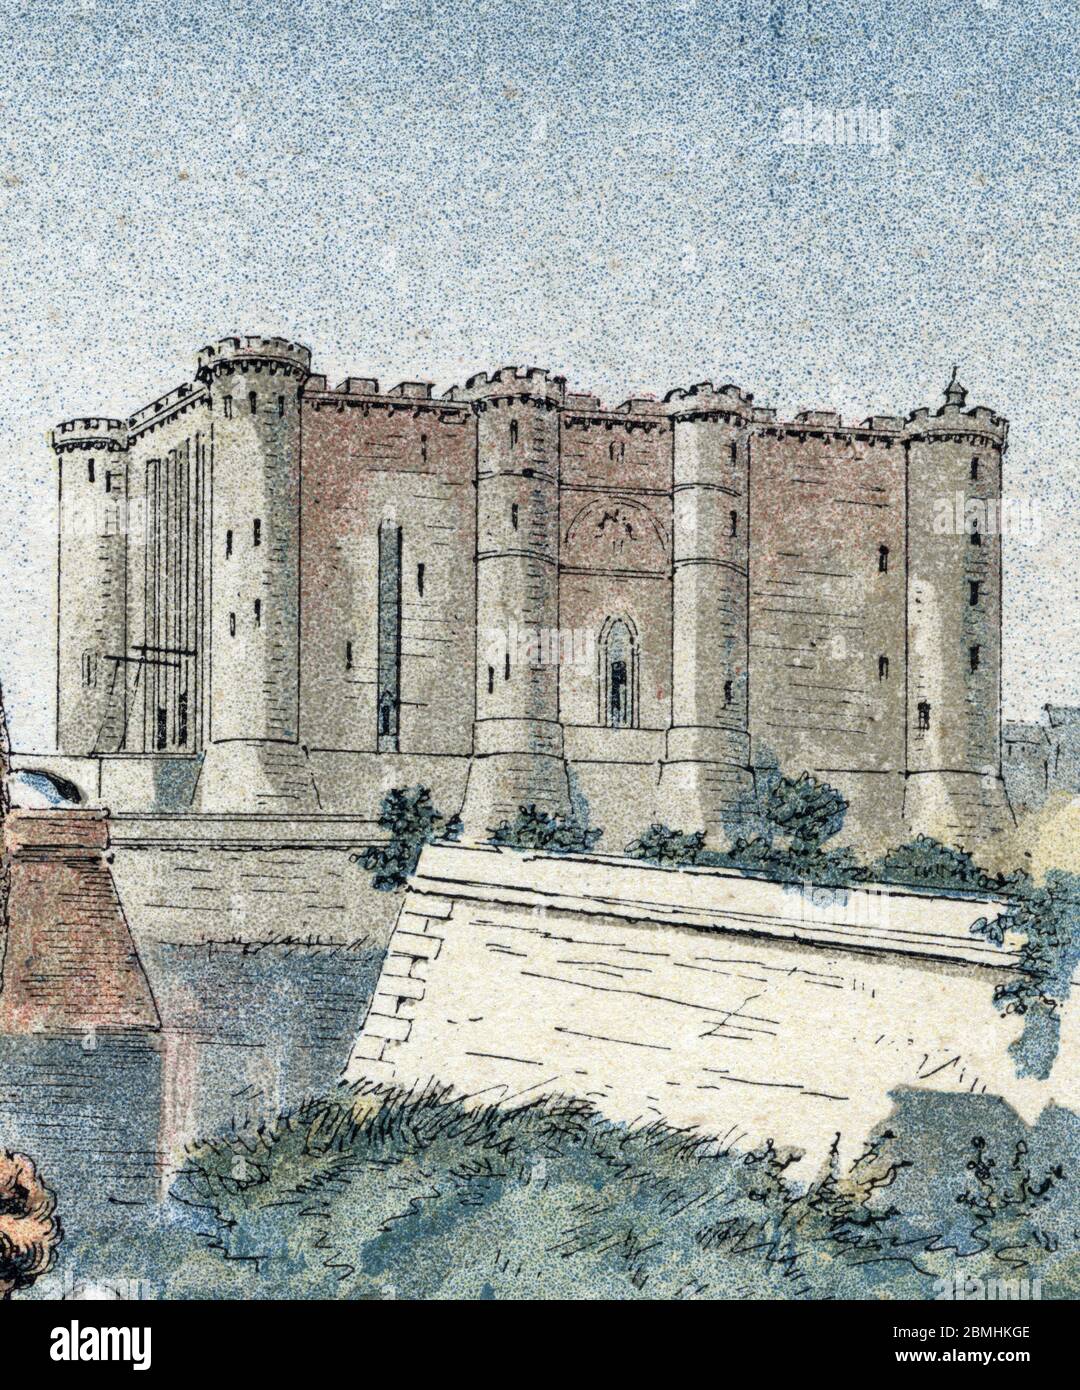 Vue de la forteresse de la Bastille, interprétation au 14eme siecle, a Paris - (la forteresse de la Bastille, Paris) Gravure tiree de 'les francaises illue Banque D'Images